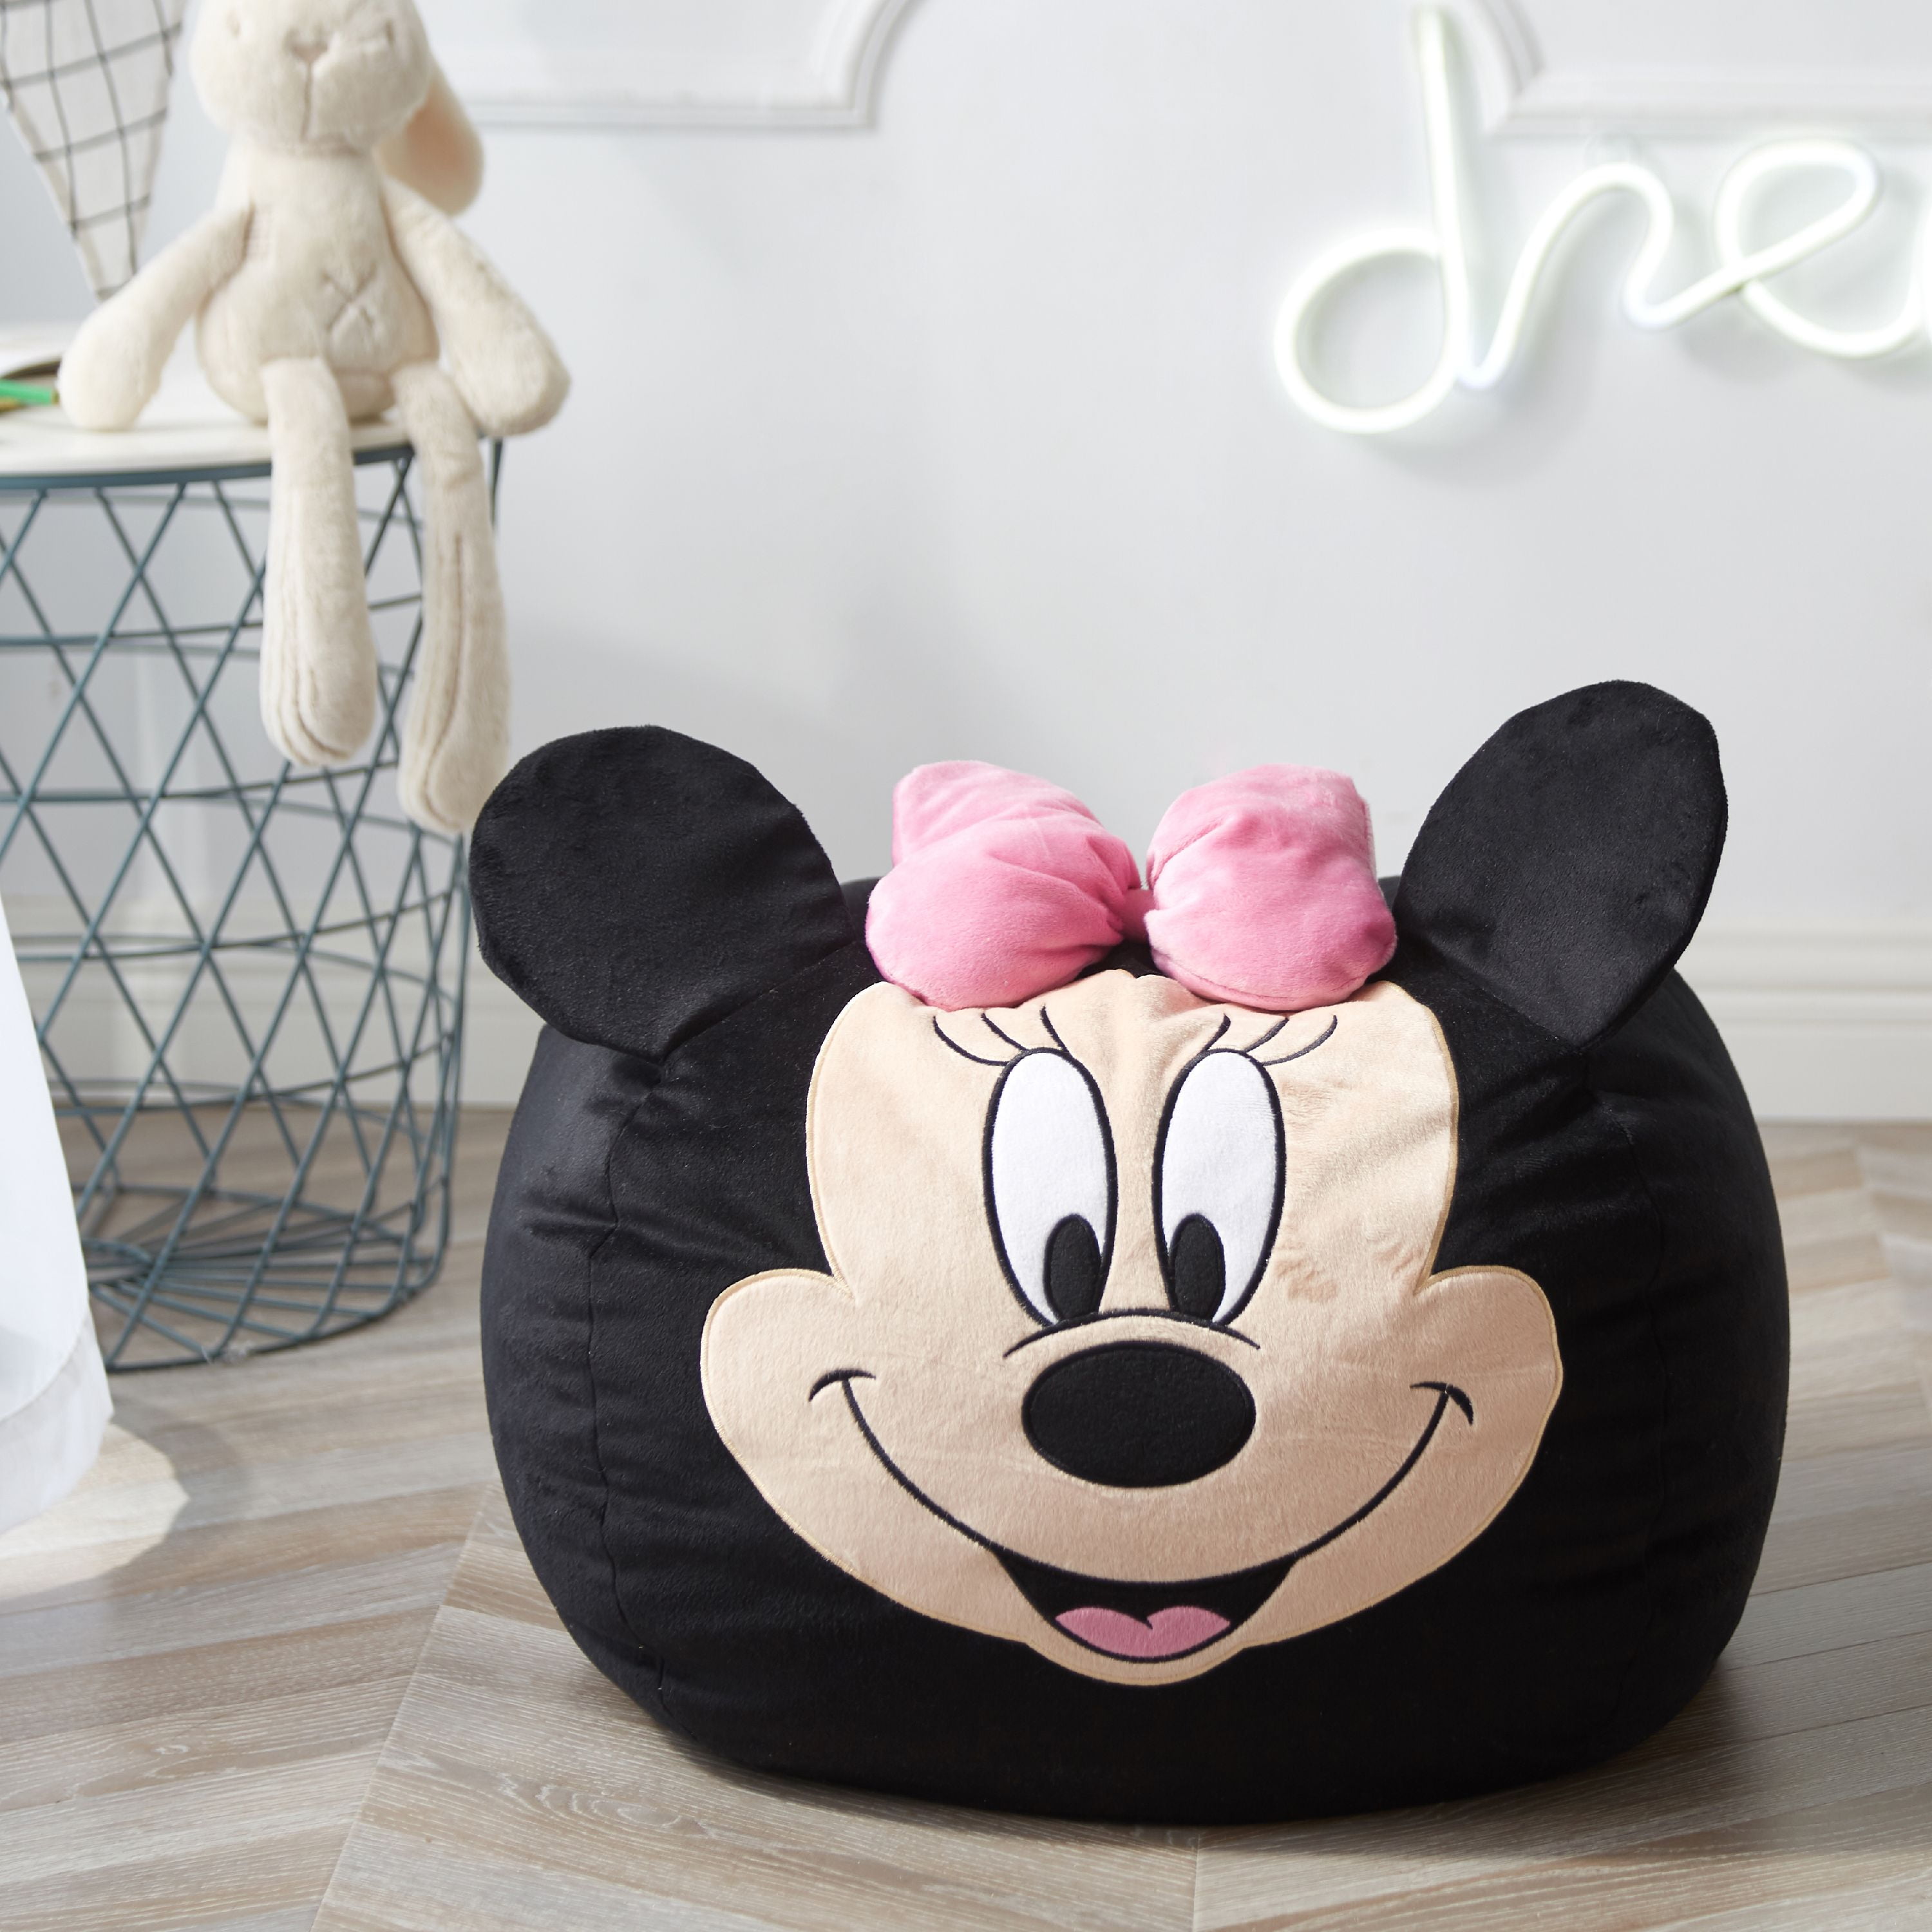 Disney Minnie Mouse Figural Bean Bag Chair